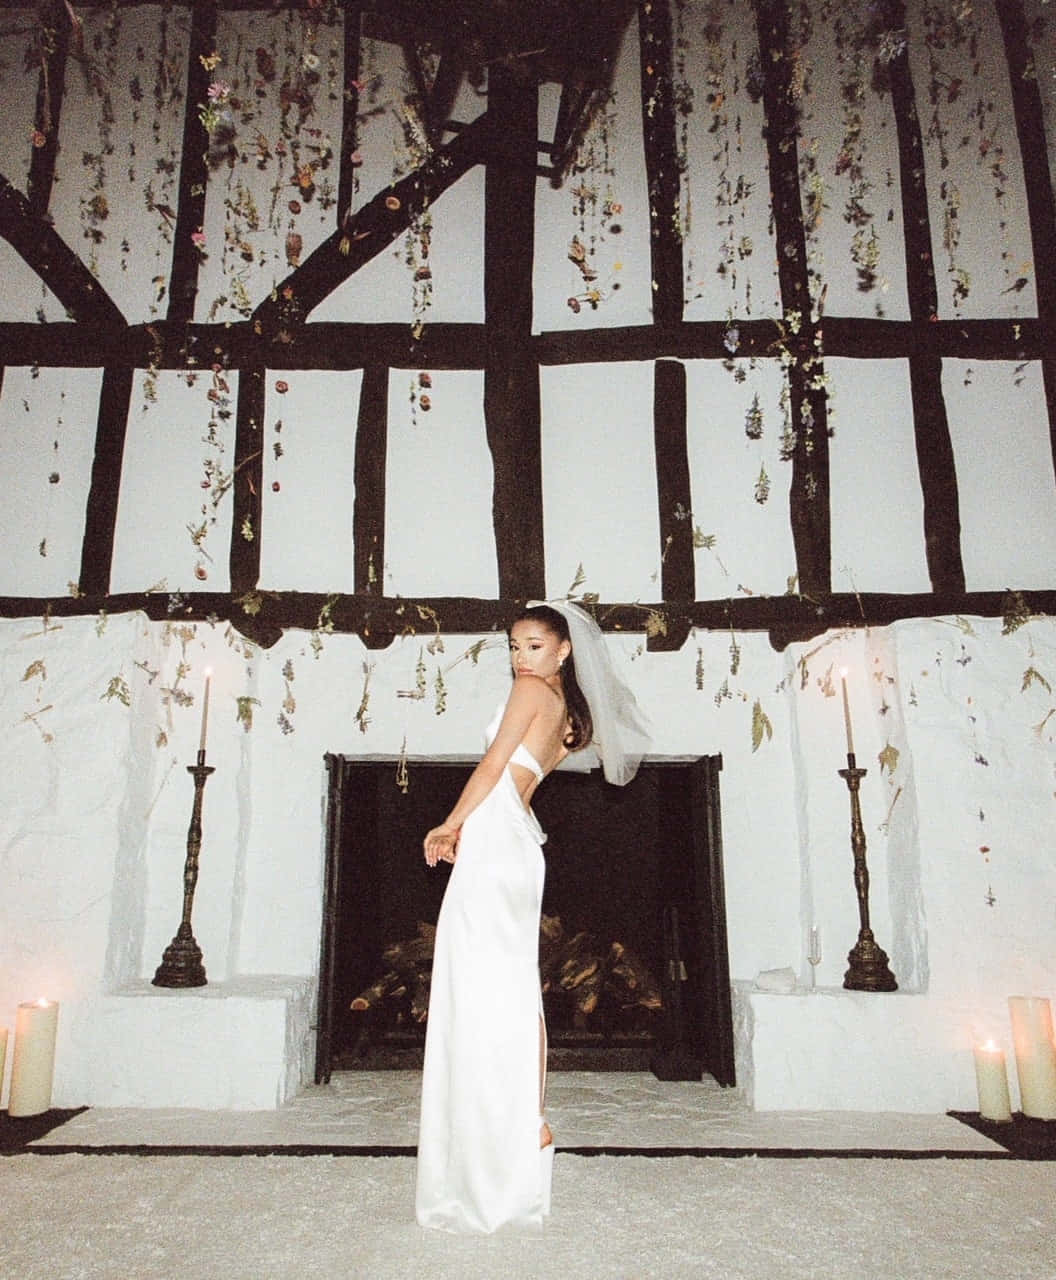 Arianagrande Modelando Na Frente De Uma Foto Da Recepção De Casamento.